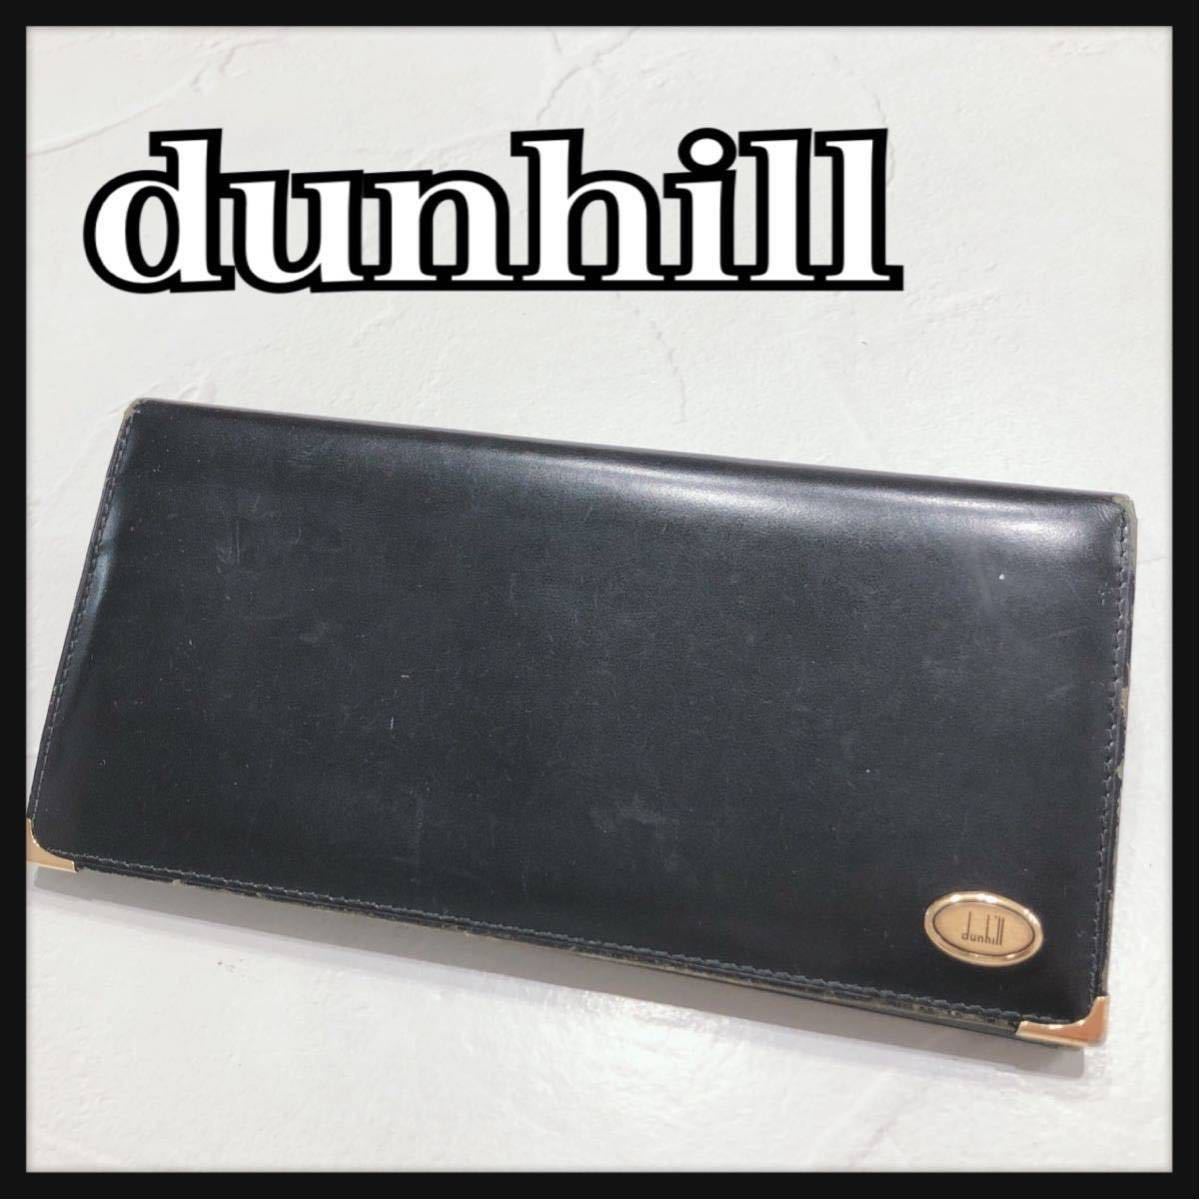 ☆dunhill☆ ダンヒル 長財布 財布 ウォレット ブラック 黒 レザー